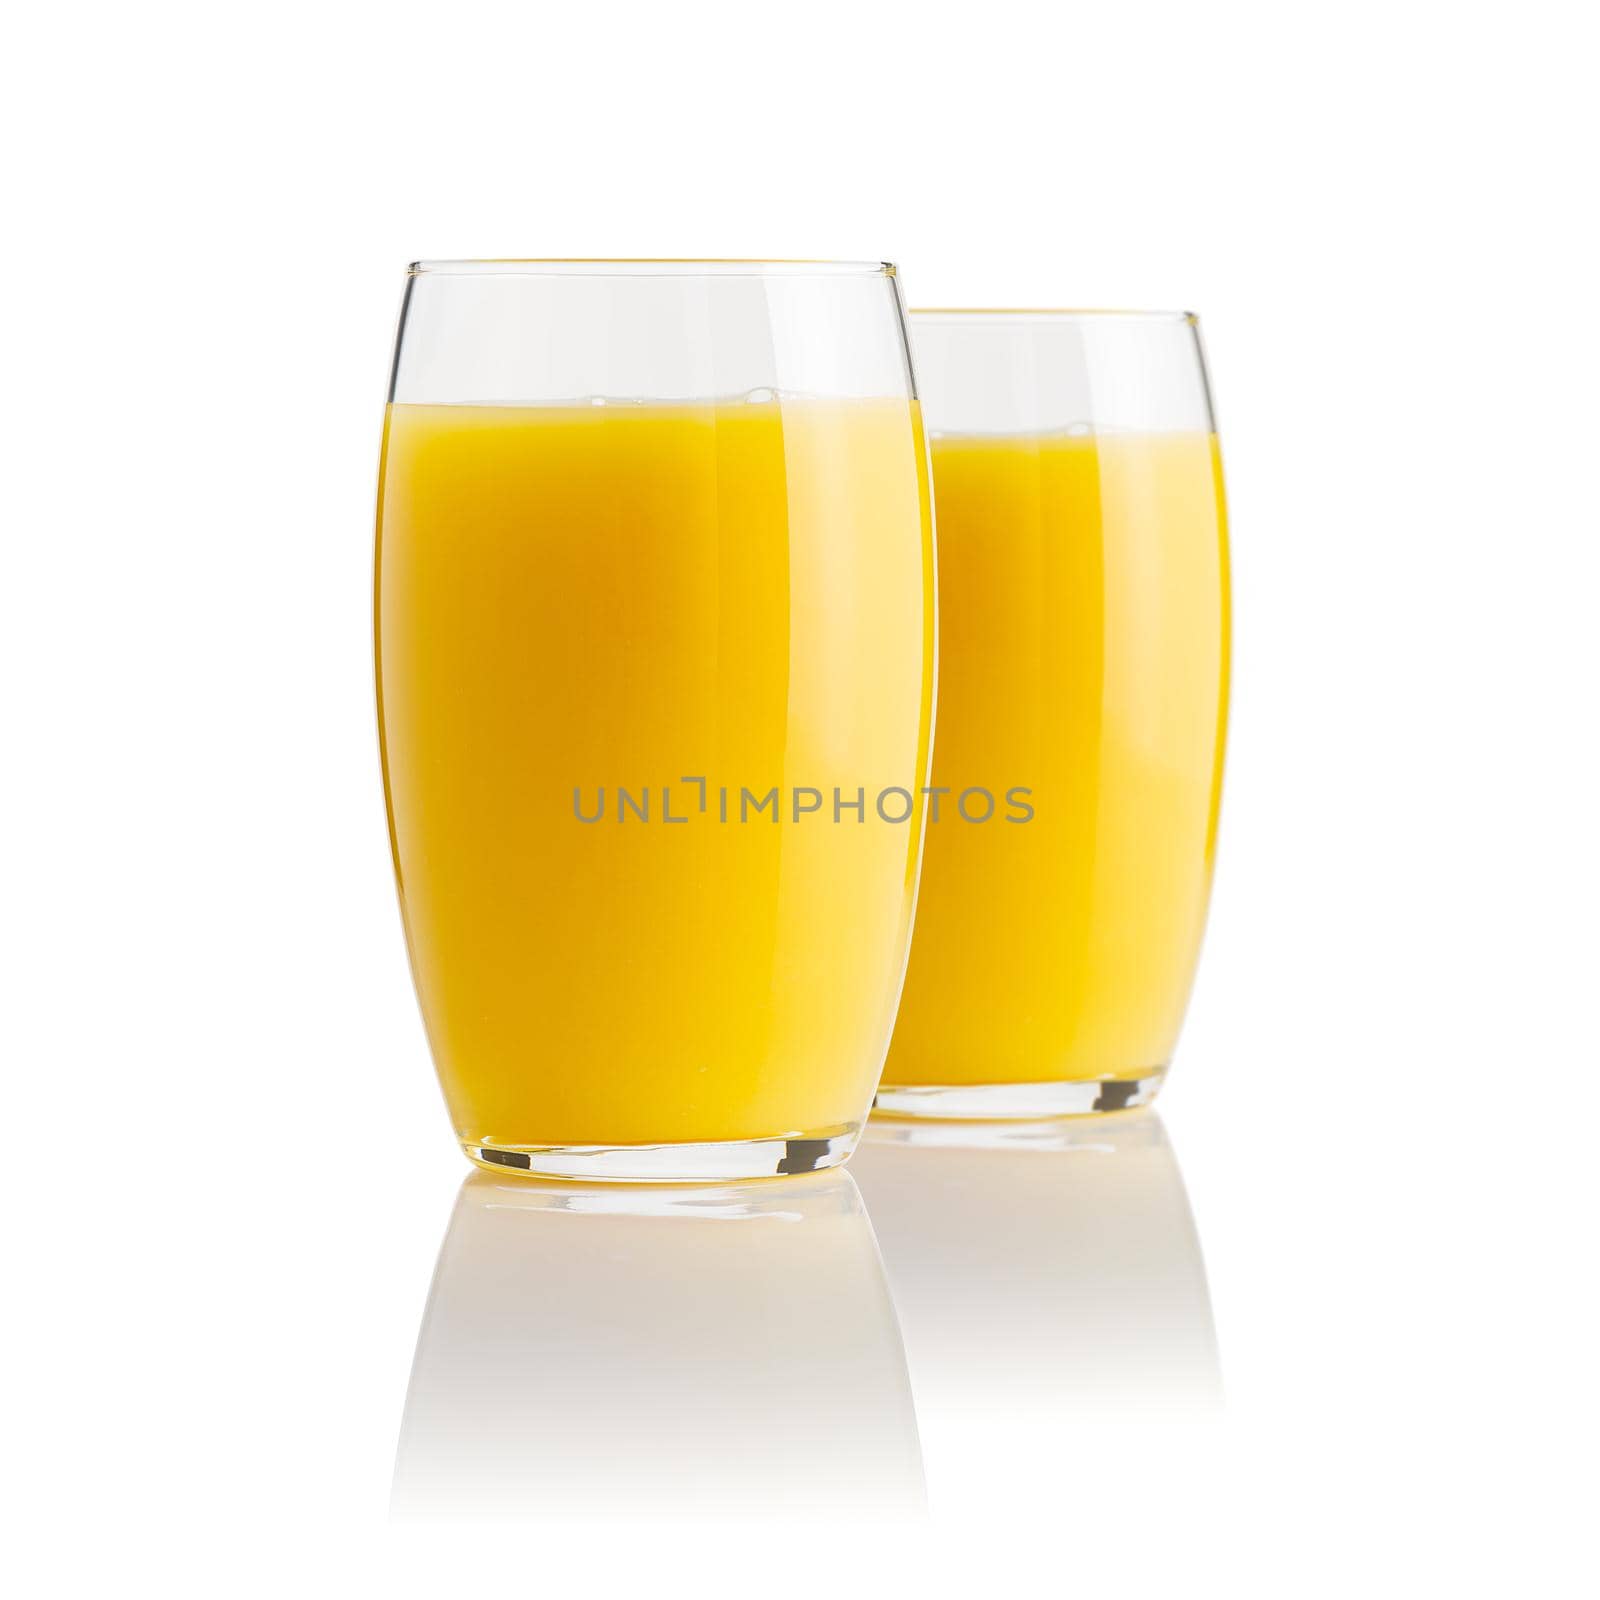 Organic Orange juice glass, isolated on white. Glass of fresh orange juice on white background